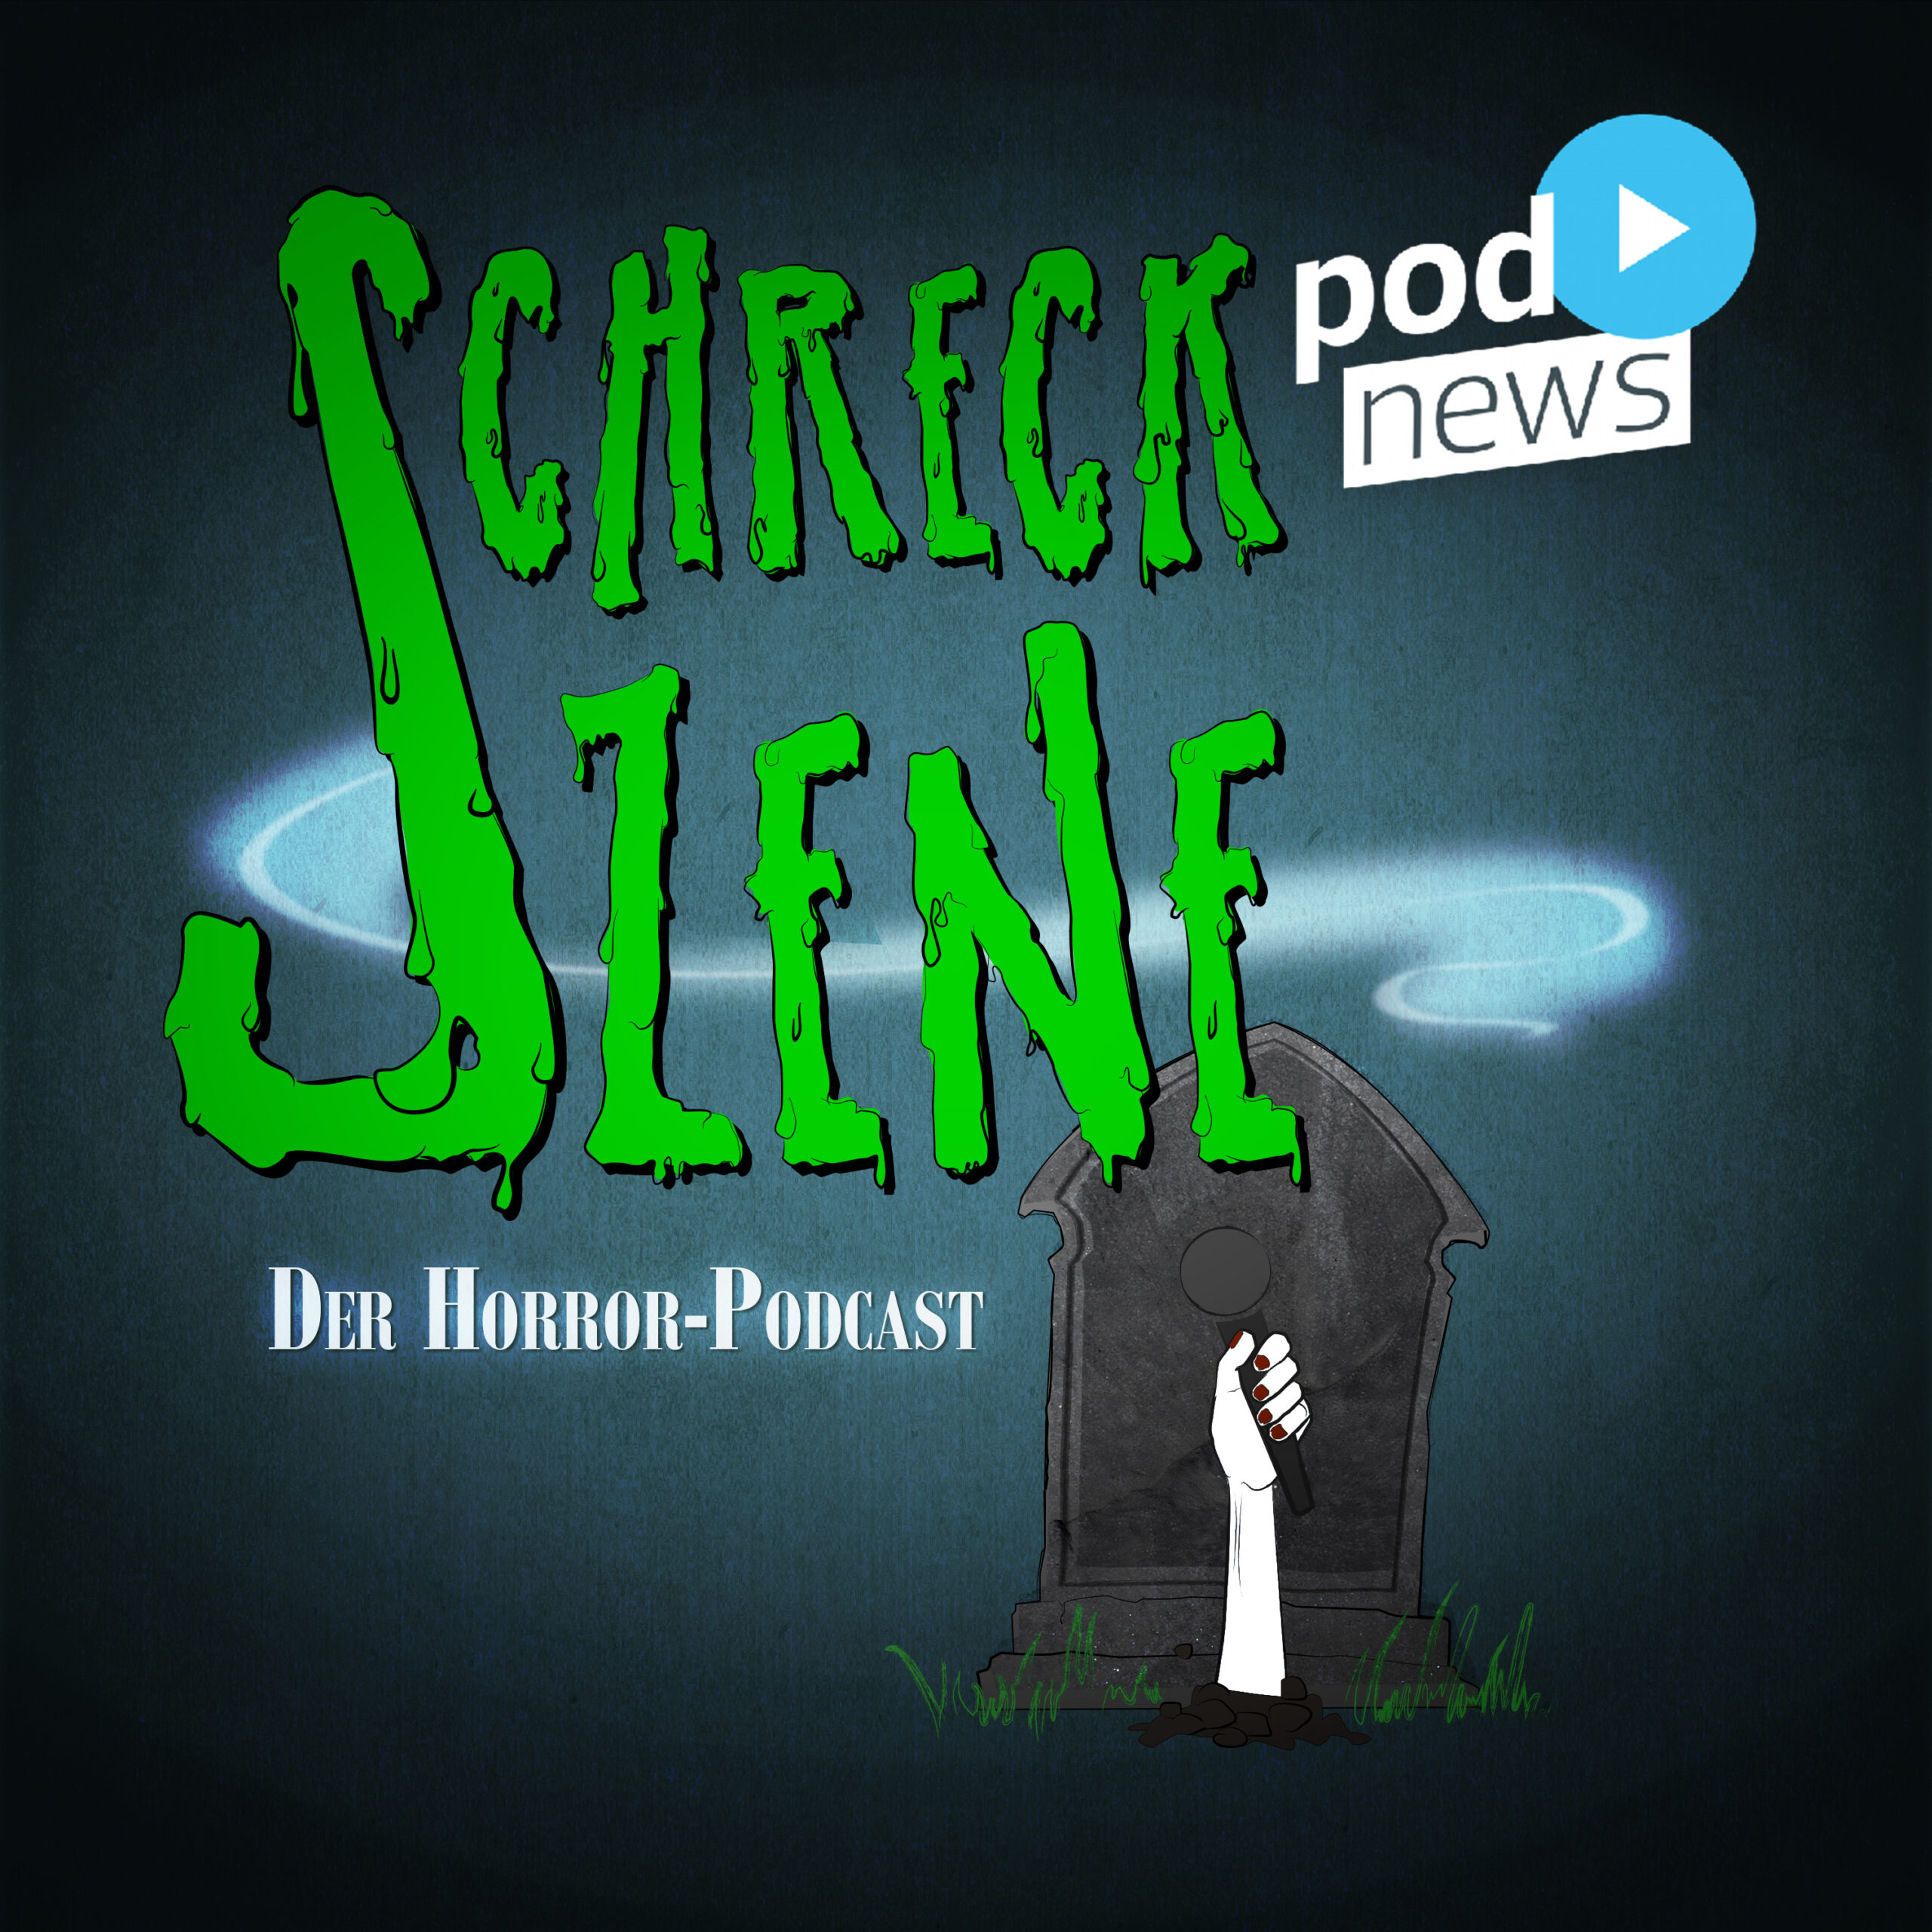 Schreckszene - Der Horror-Podcast